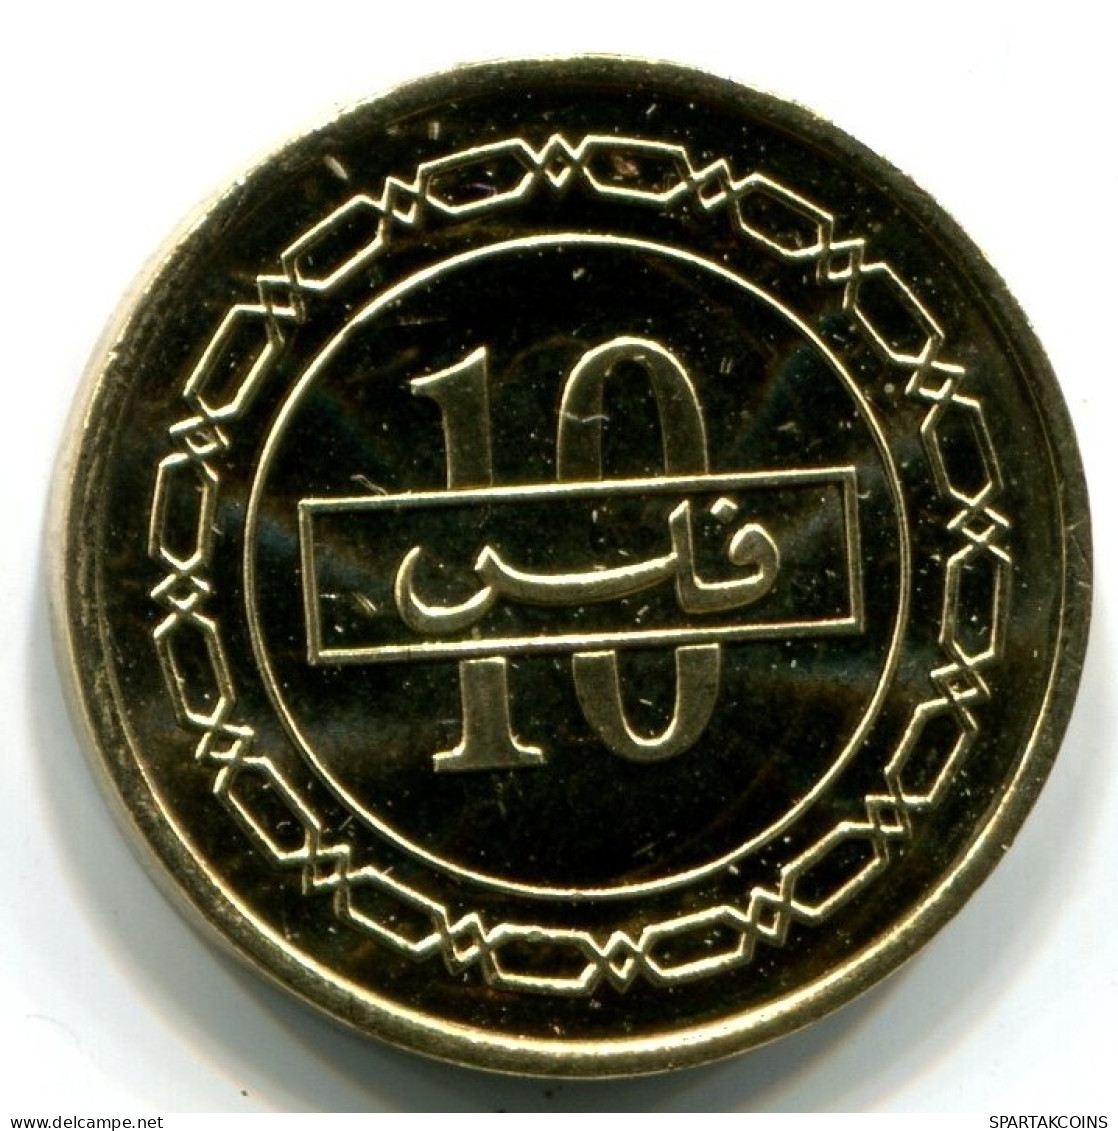 10 FILS 2000 BAHRAIN Islamic Coin UNC #W11318.U.A - Bahrain